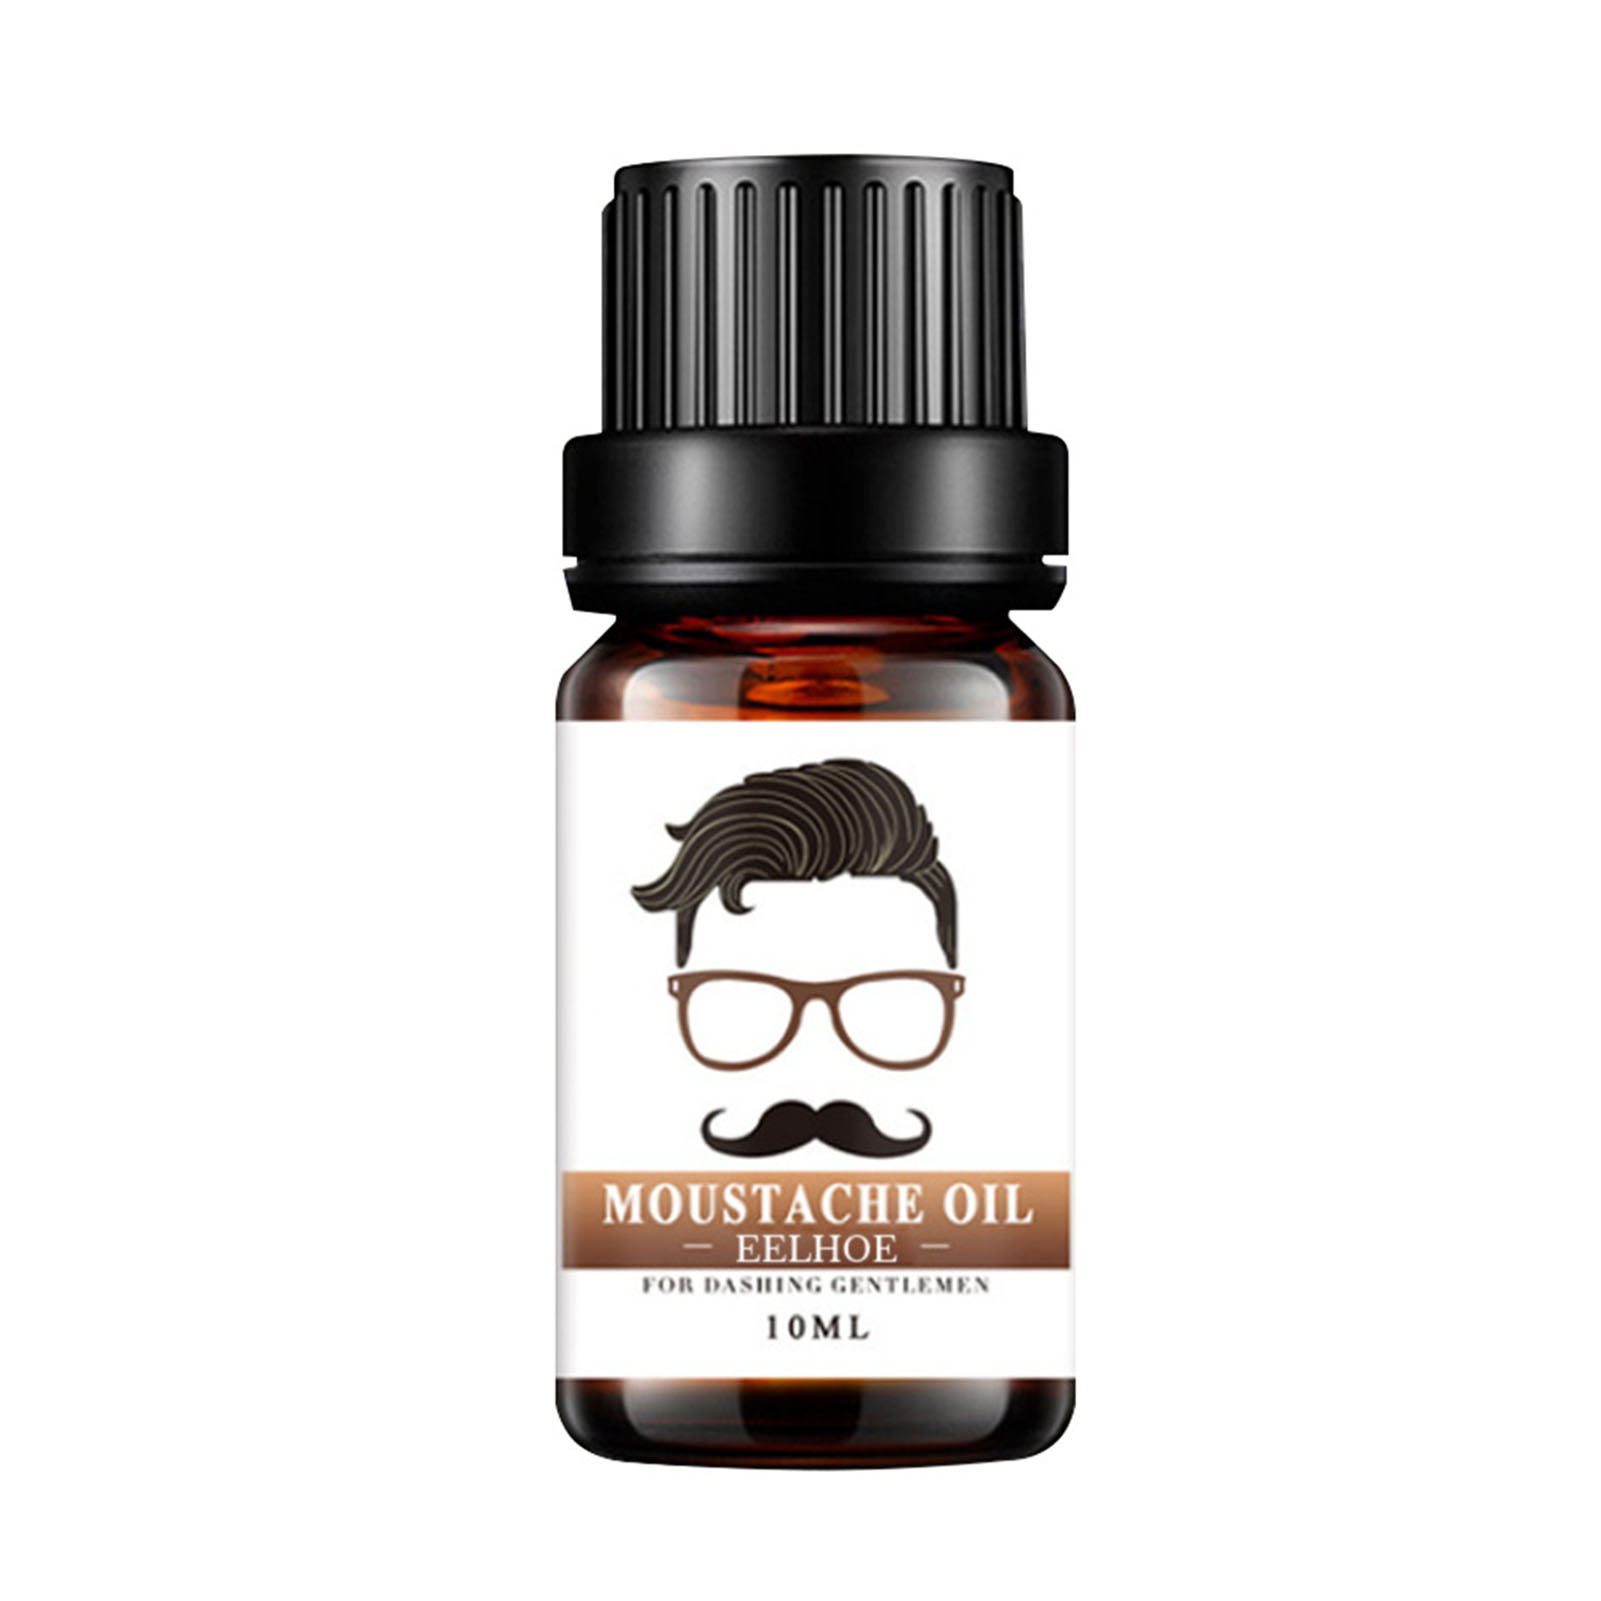 10ml Men Beard Growth Oil Kit Soften Hair Growth Nourishing Enhancer Beard Styling Mustache Oil Leave-In Conditioner Beard Care